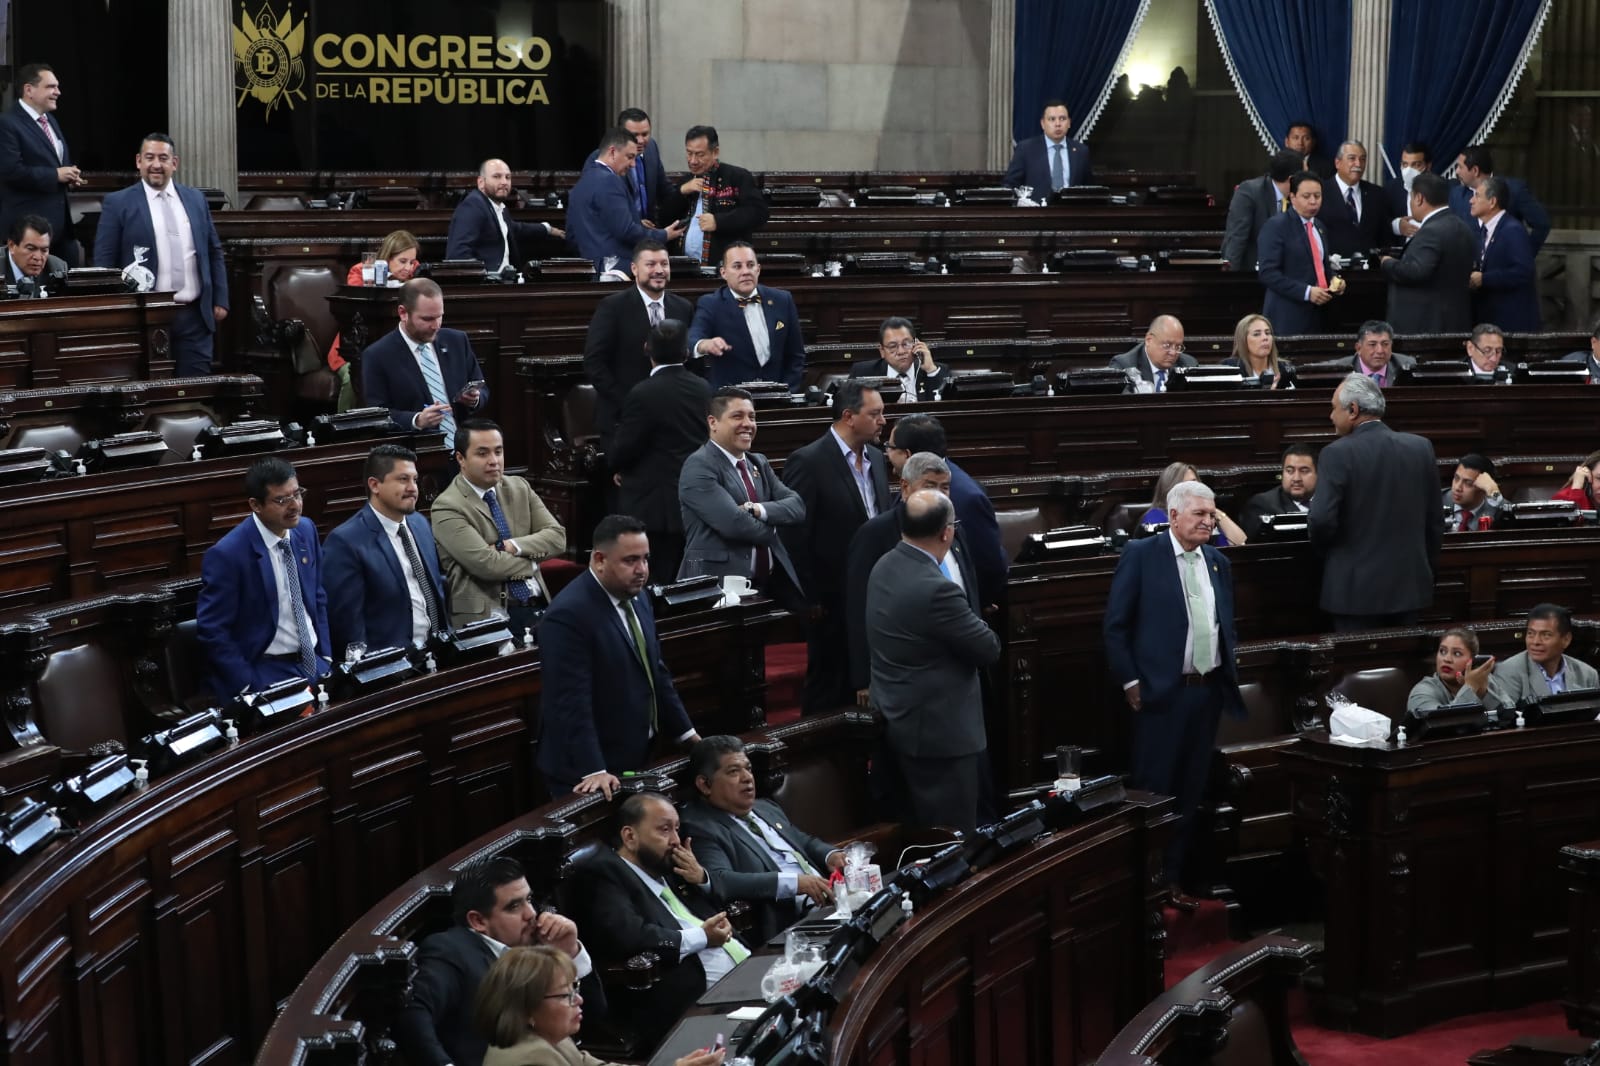 Los diputados del Congreso de la República se irán de descanso durante dos semanas. (Foto Prensa Libre: Élmer Vargas)